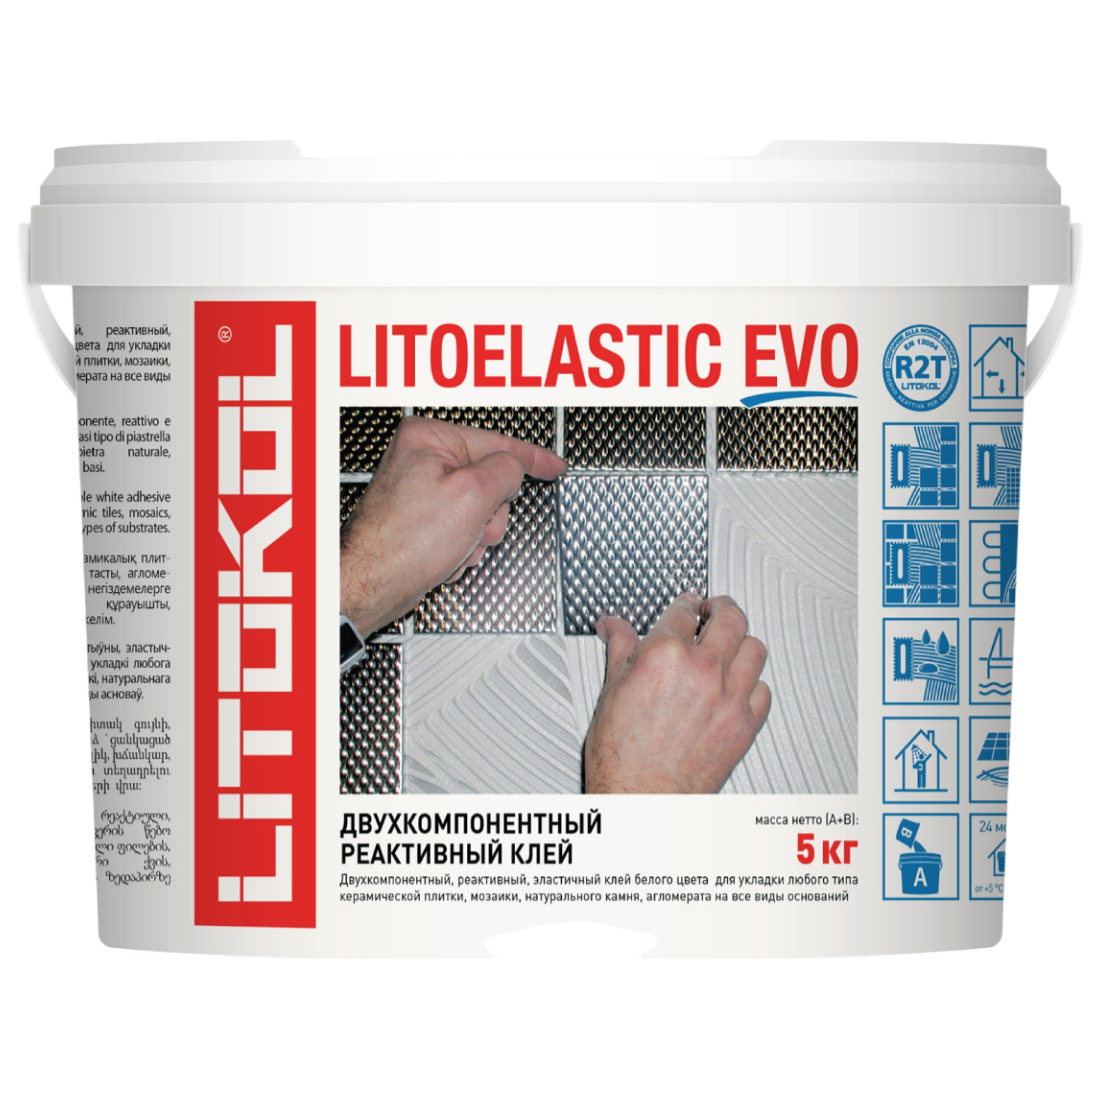 Клей LITOKOL LITOELASTIC EVO - двухкомпонентный 5kg bucket 484140002 клей для плитки реактивный litokol litoelastic evo 5кг